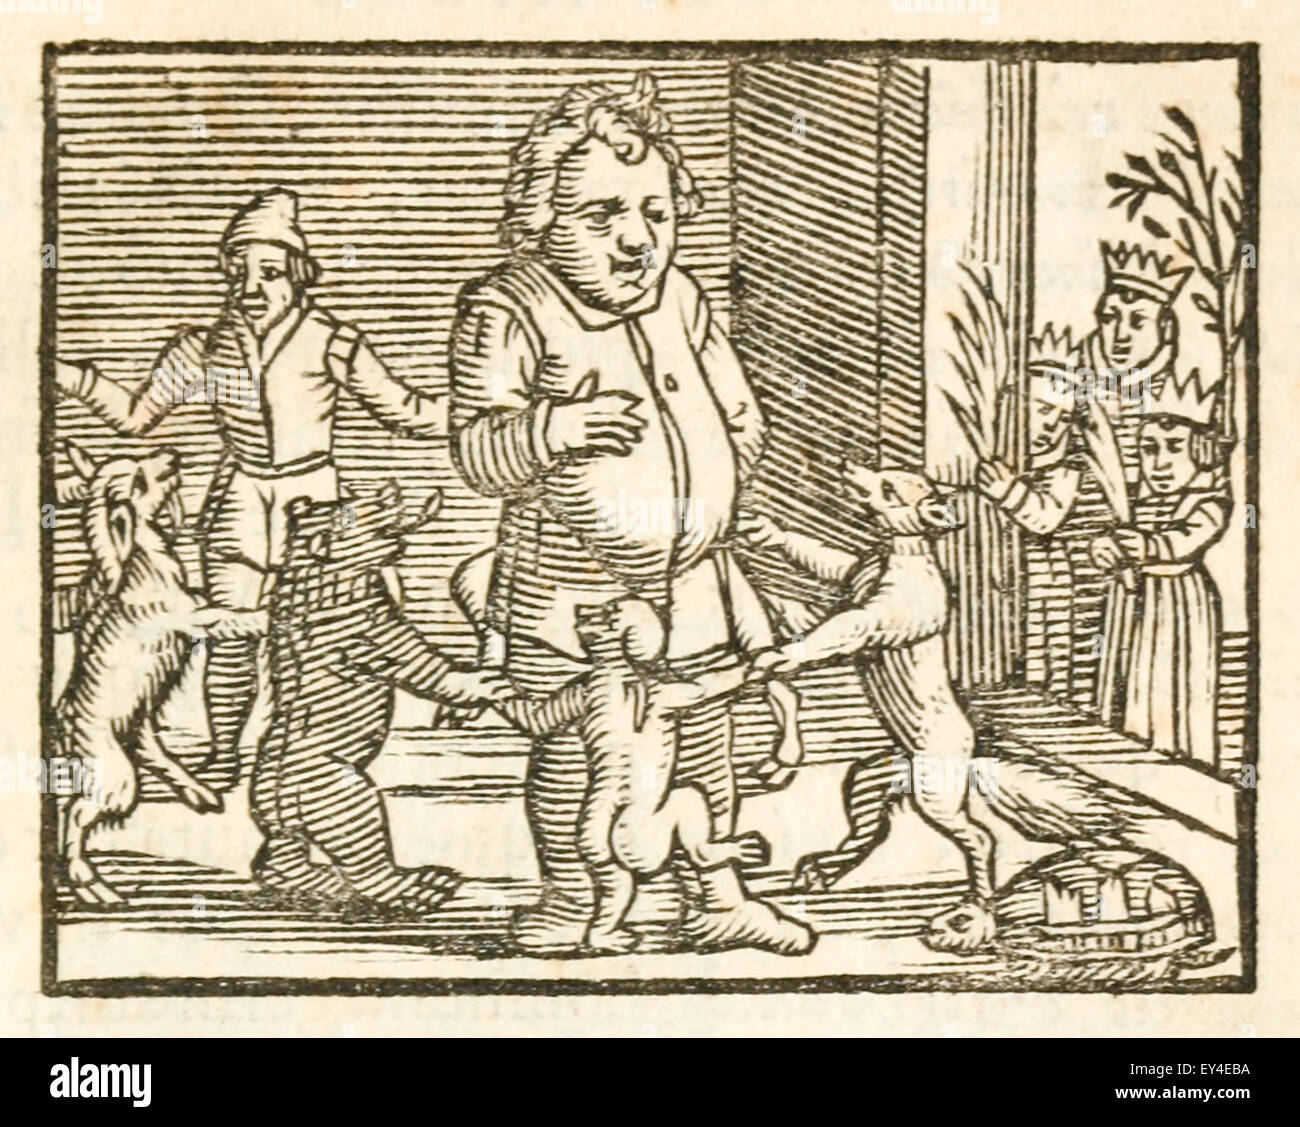 Aesop umgeben von Tieren, die in seiner Fabeln erscheinen. 17. Jahrhundert Holzschnitt Drucken zur Veranschaulichung Aesop Fabeln. Siehe Beschreibung für mehr Informationen. Stockfoto